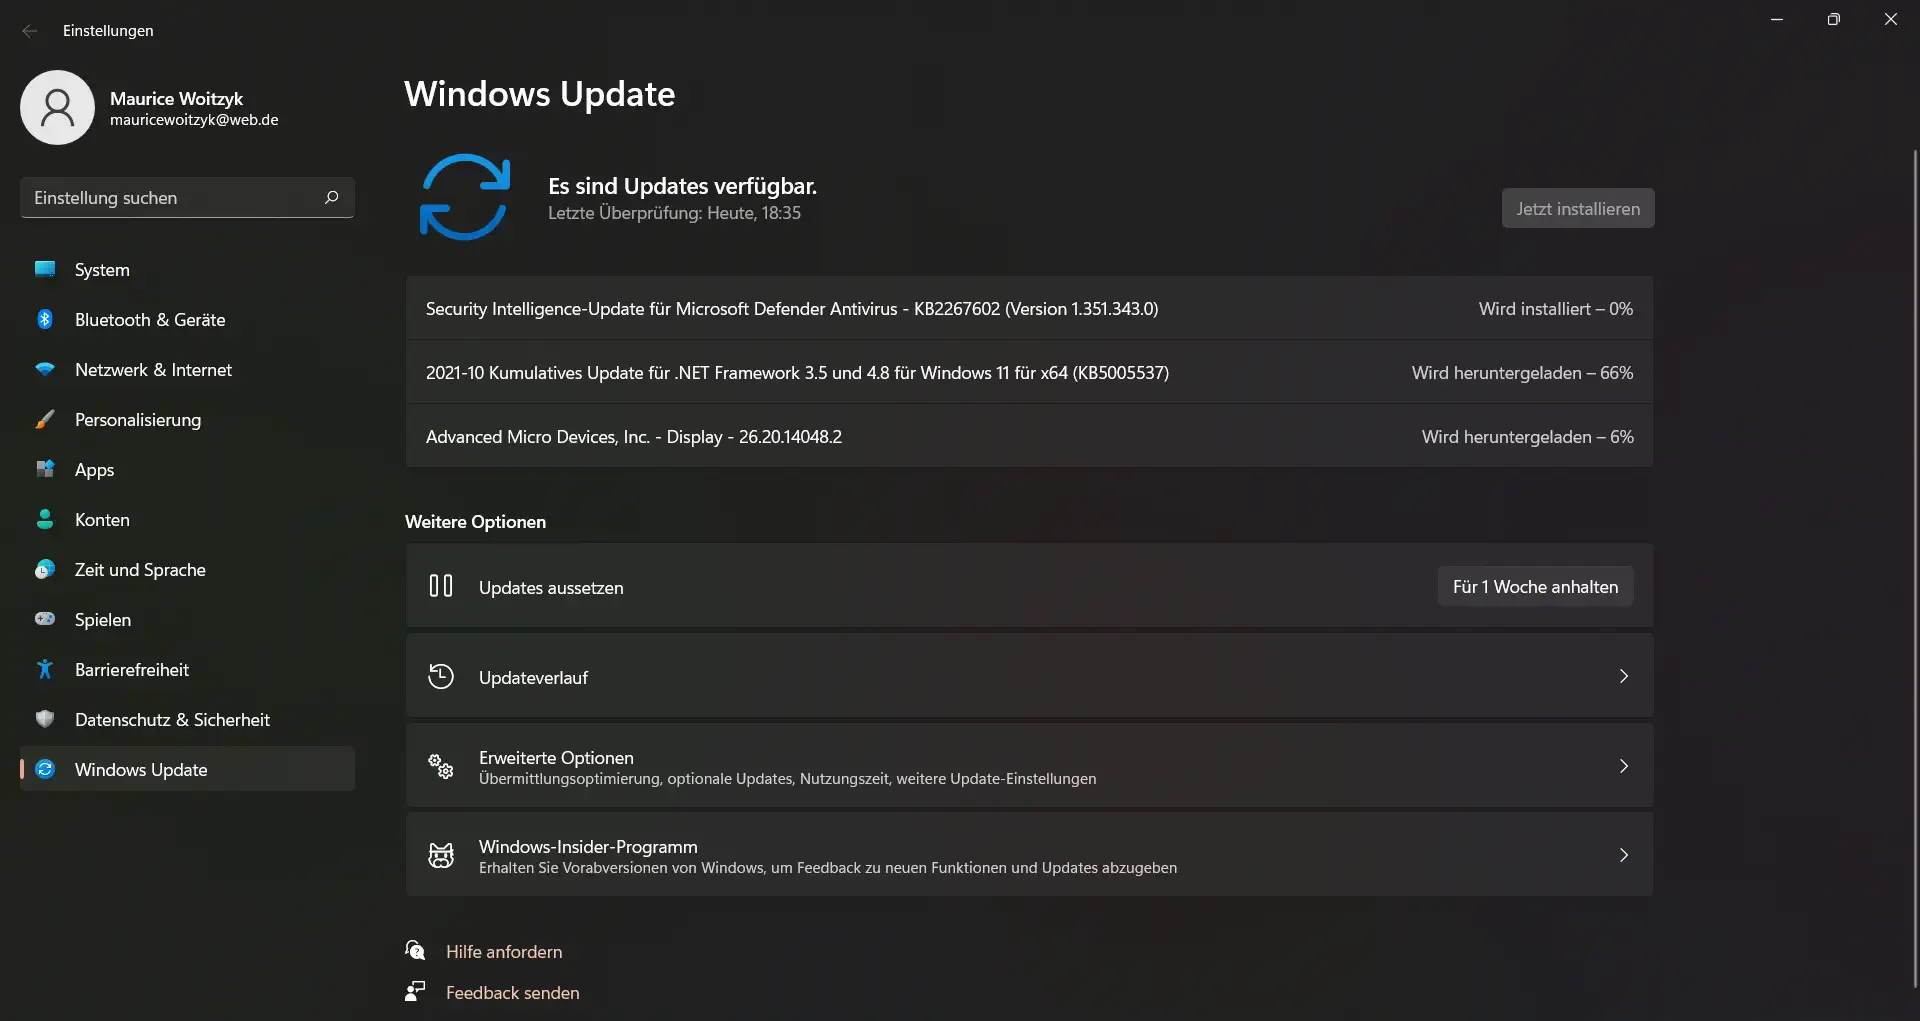 Nach dem Windows 11 Update folgen weitere Updates